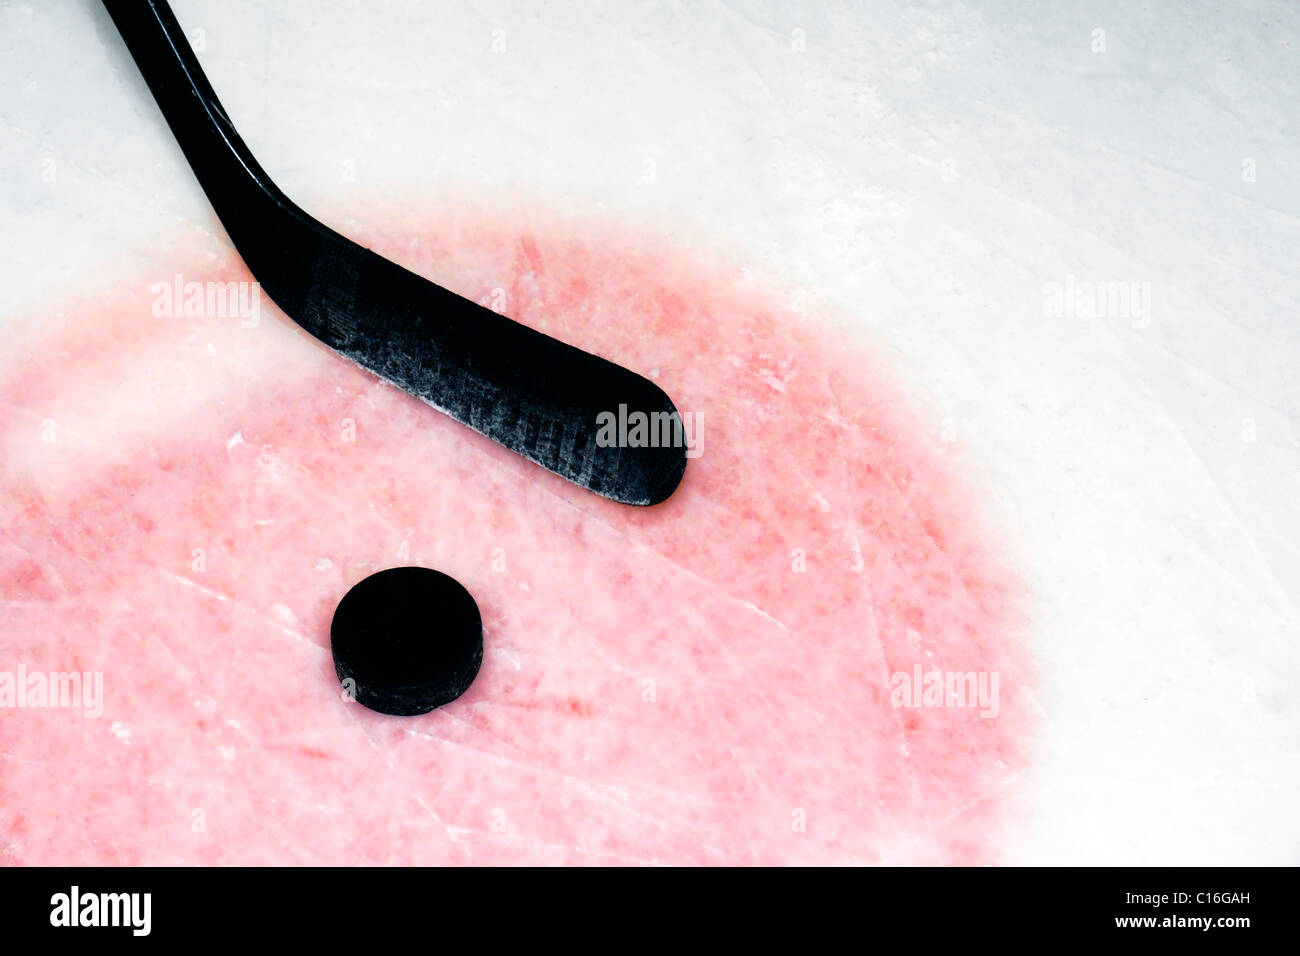 Contexte : le sport hockey stick graphite et rondelle lors de real arena utilisés et gratté la glace. Banque D'Images